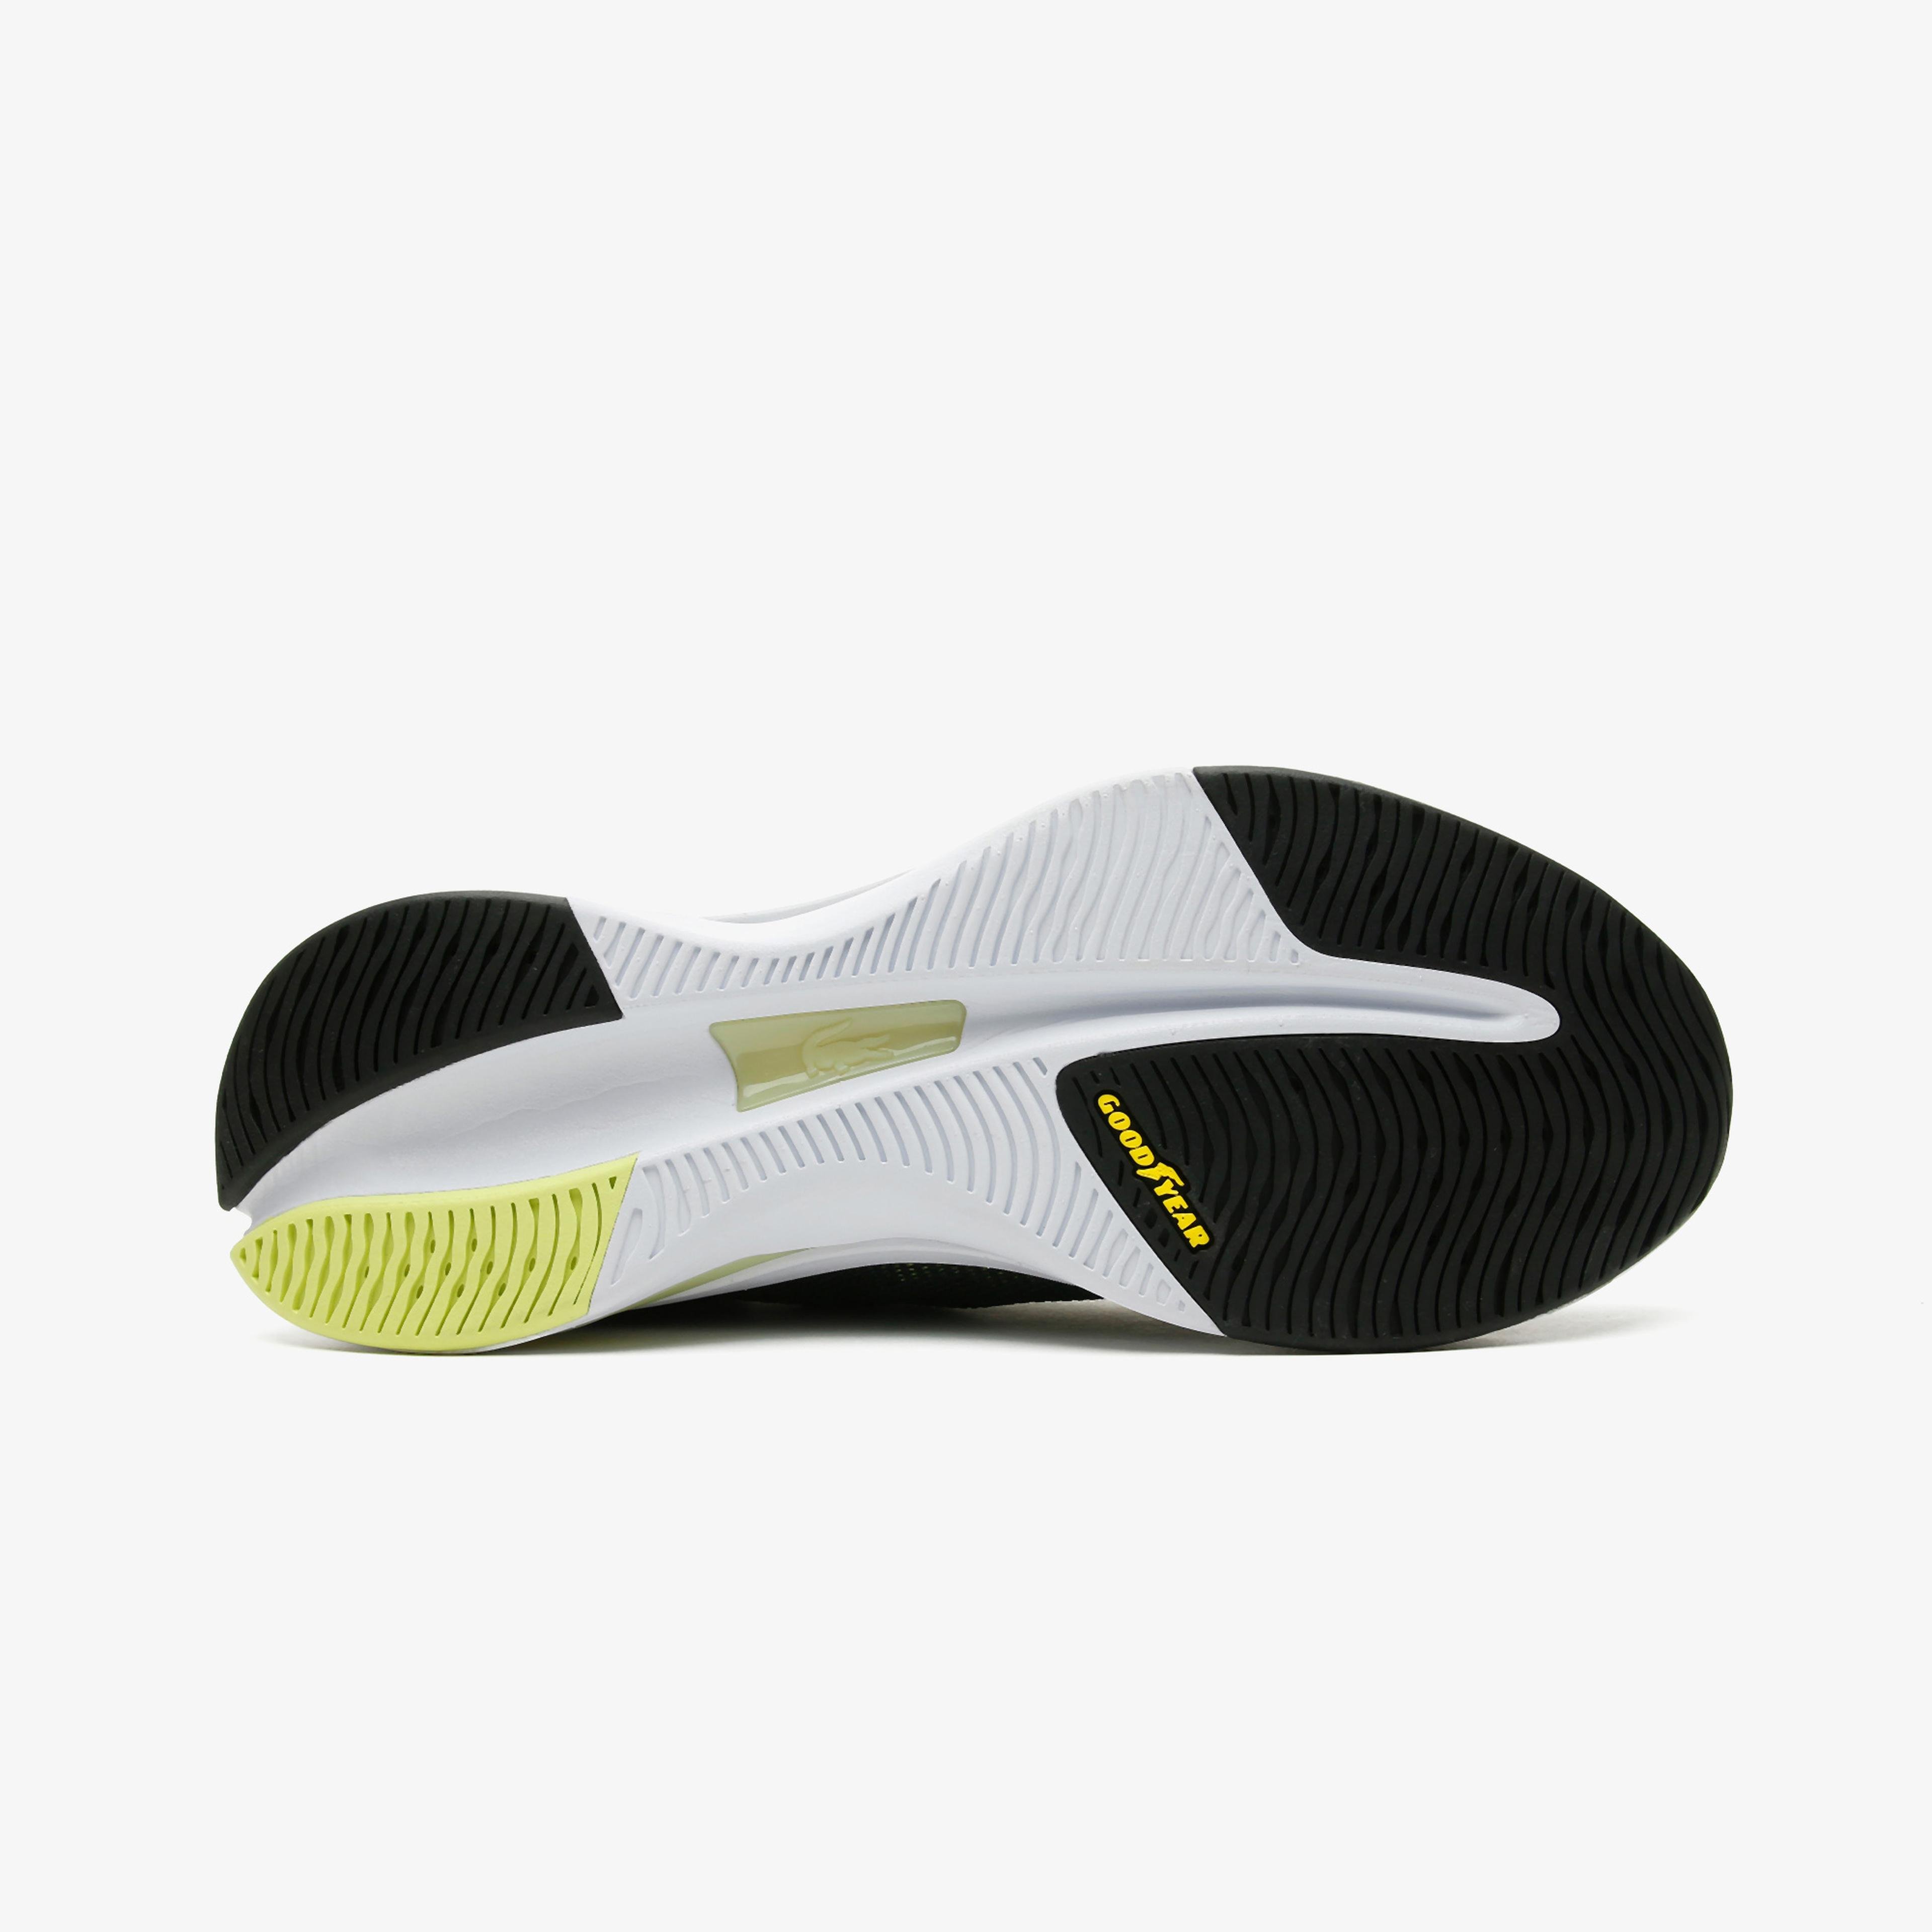 Lacoste Run Spin Ultra 0921 1 Sma Erkek Siyah - Sarı Spor Ayakkabı